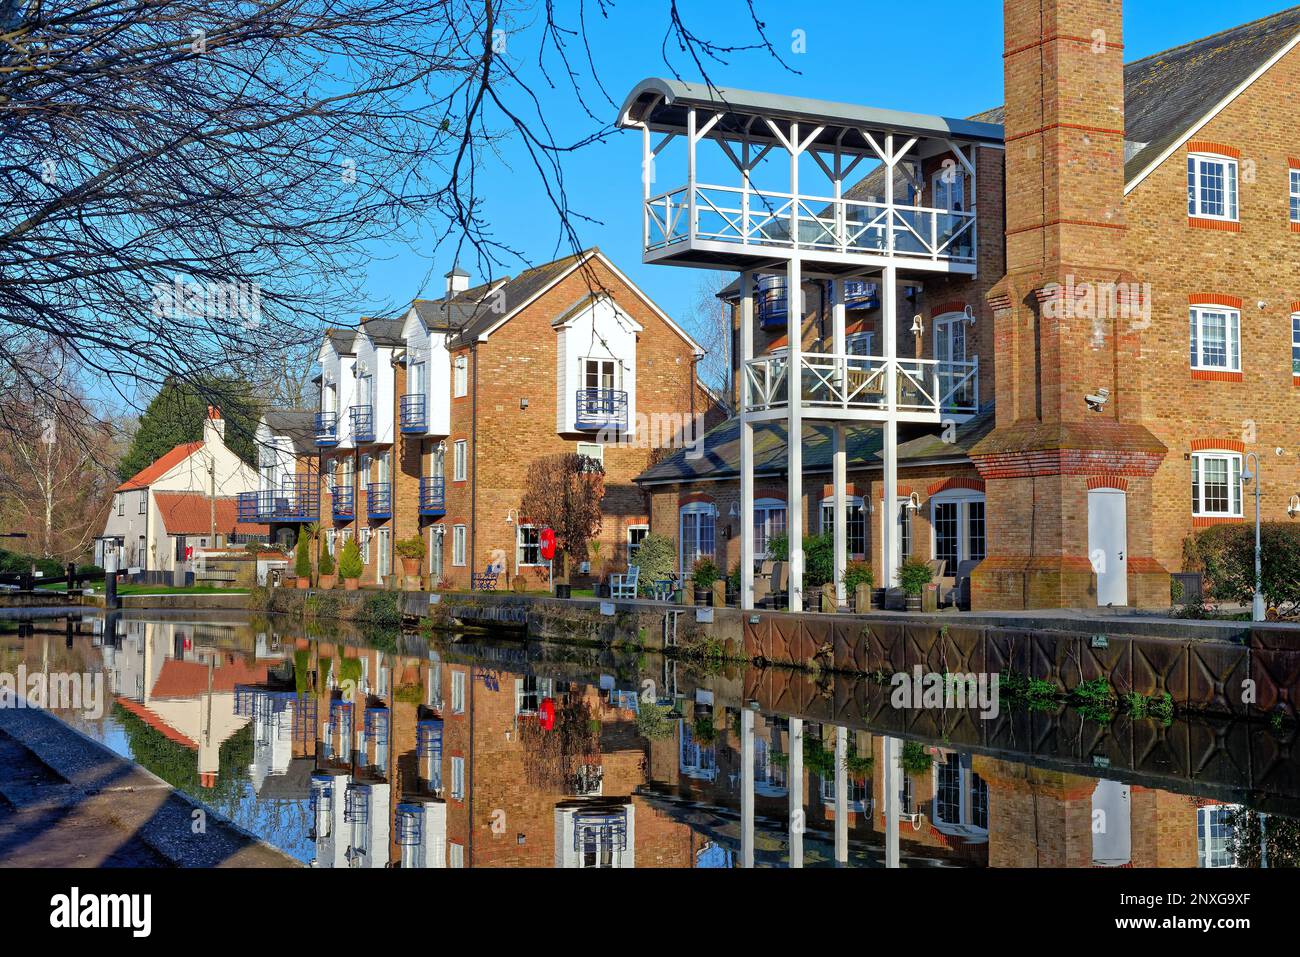 Appartements modernes au bord de l'eau développés à partir d'anciens bâtiments industriels sur la rivière Wey navigation canal à Thames Lock, Weybridge Surrey Angleterre Royaume-Uni Banque D'Images